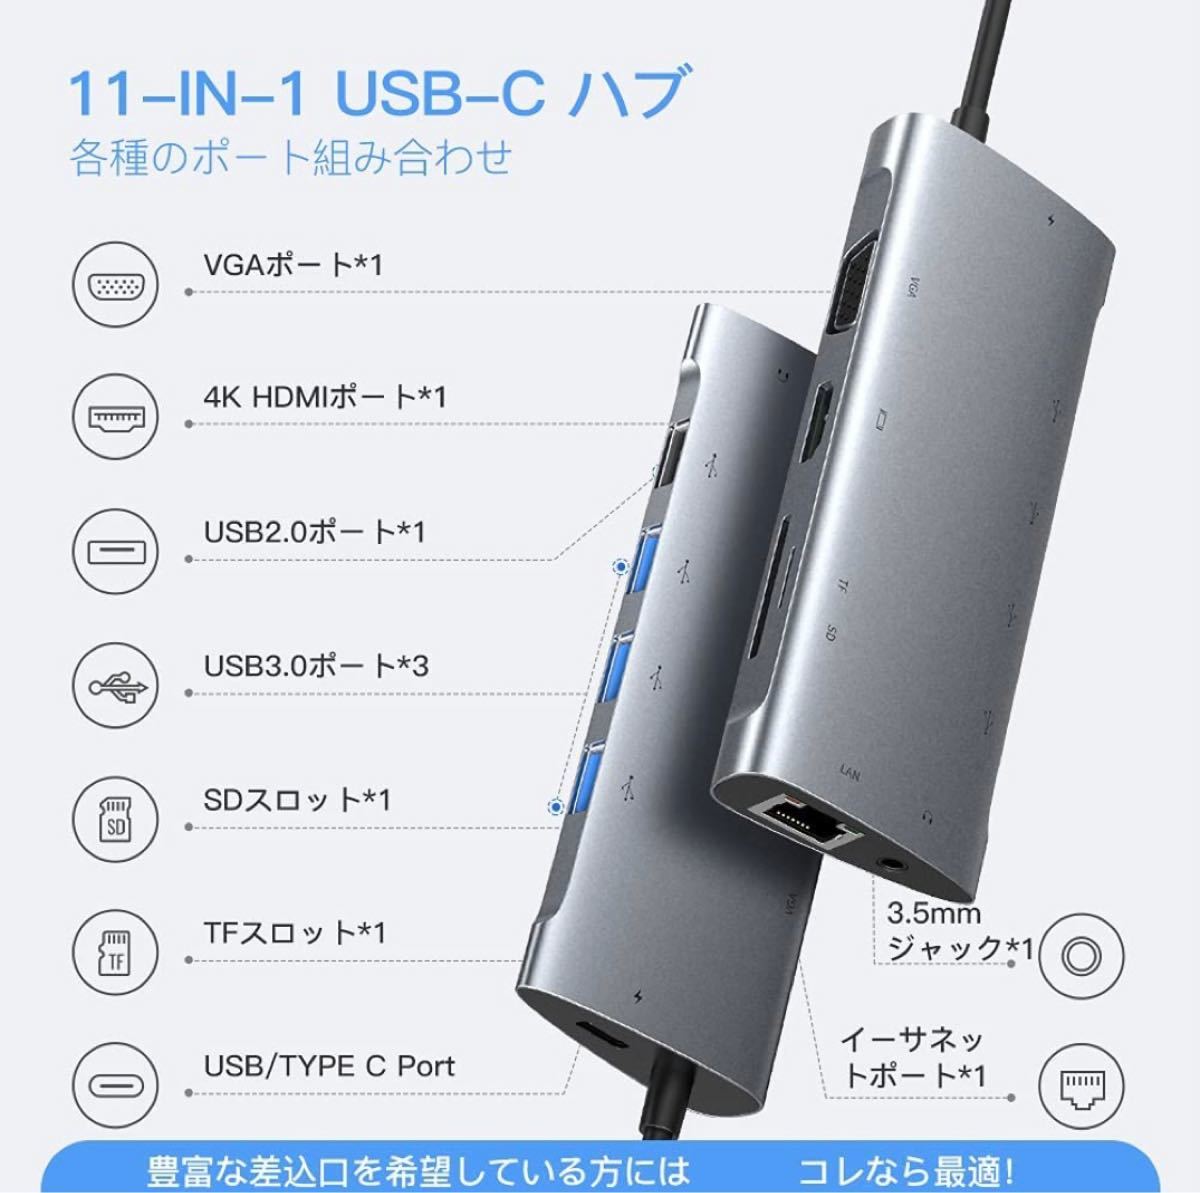 11-IN-1 Type C ハブ マルチディスプレー ドッキングス HDMI TYPE HDMI出力 USB USB3.0 